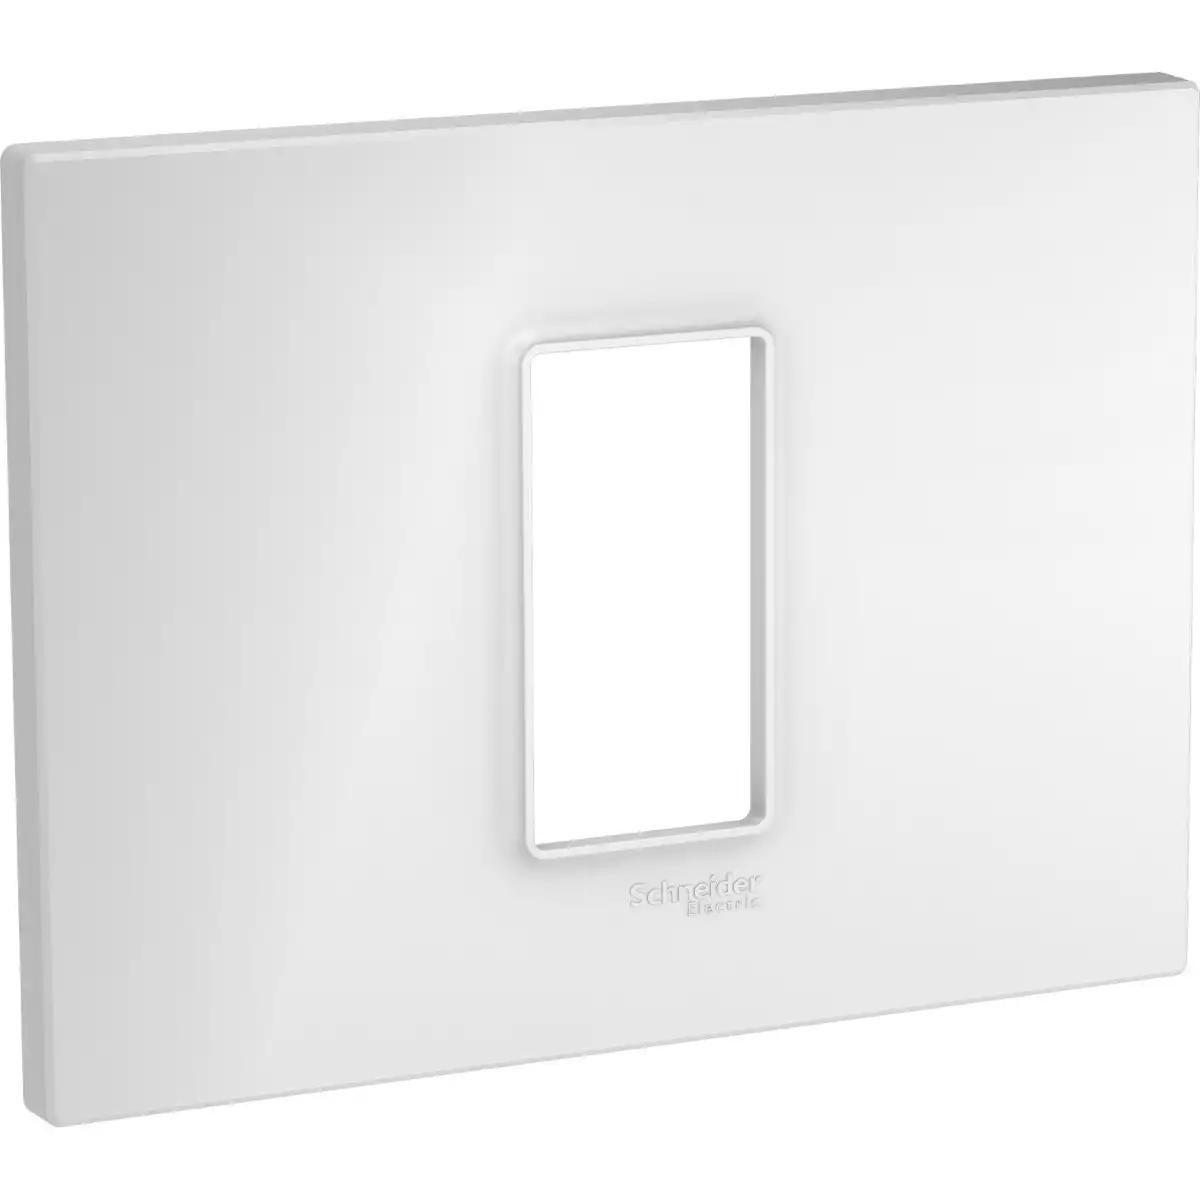 Unica Quadro - cover frame - 1 module - white